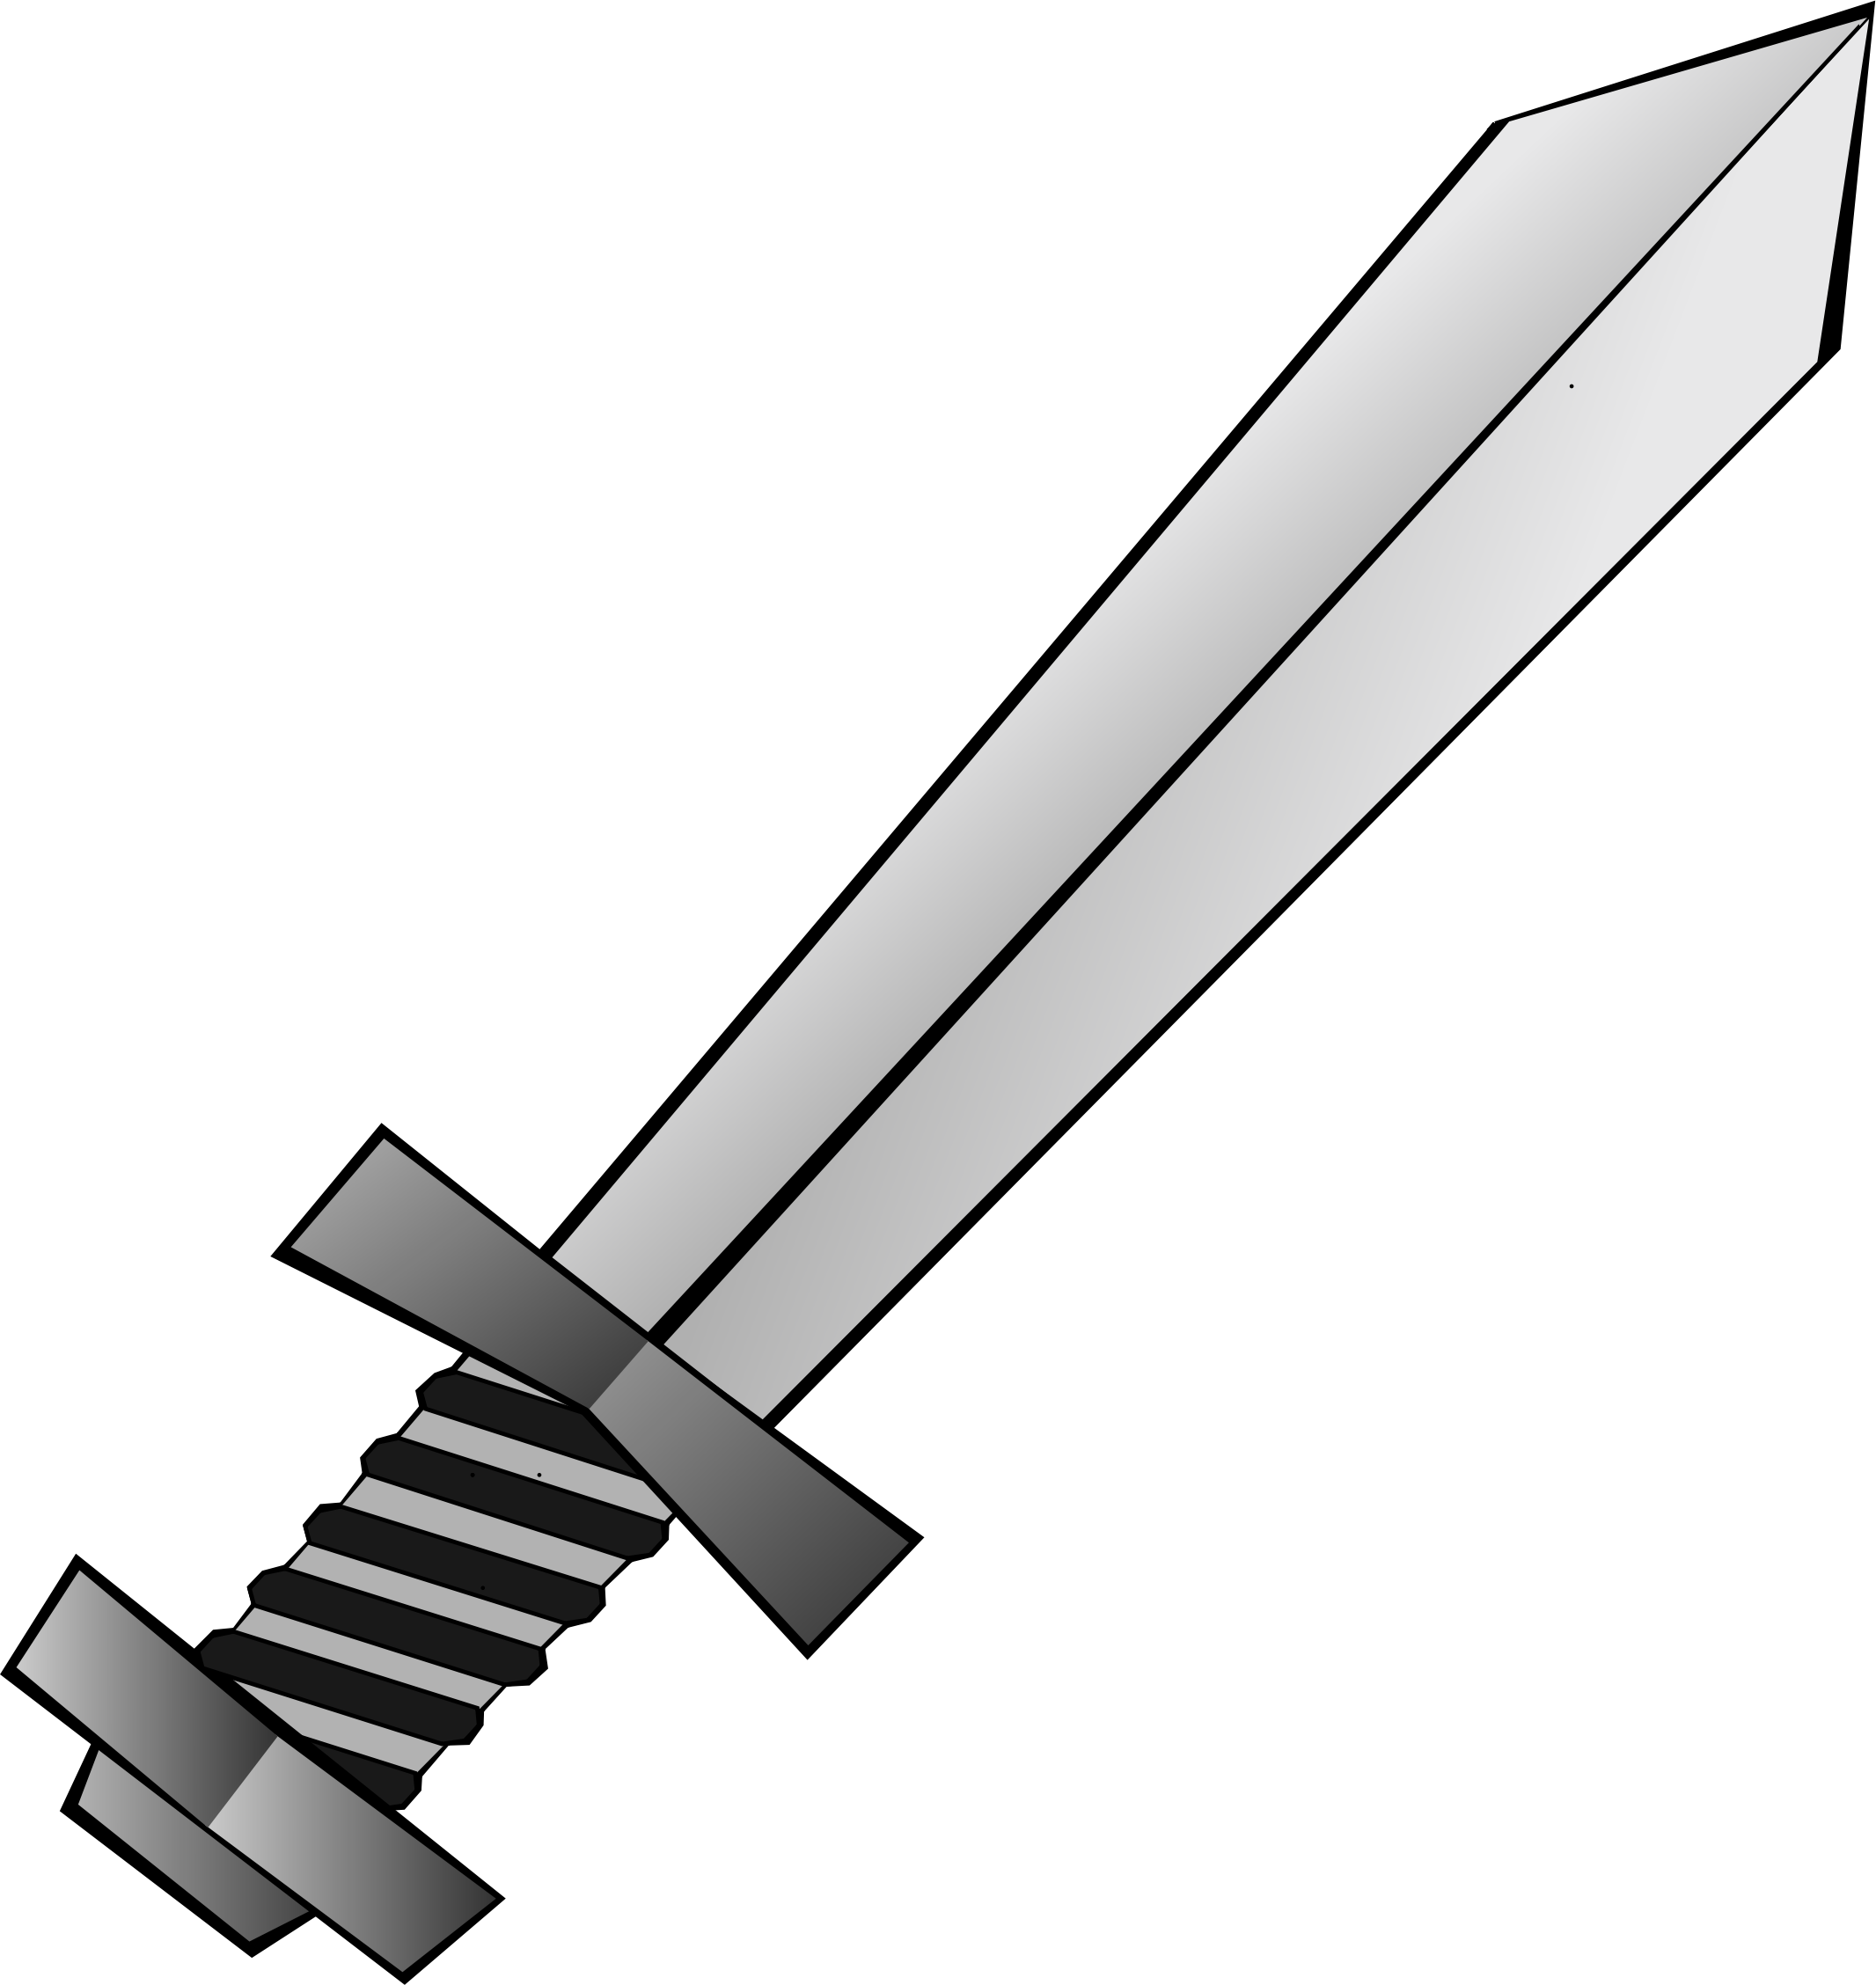 Clip art sword - ClipartFest - Clip Art Sword